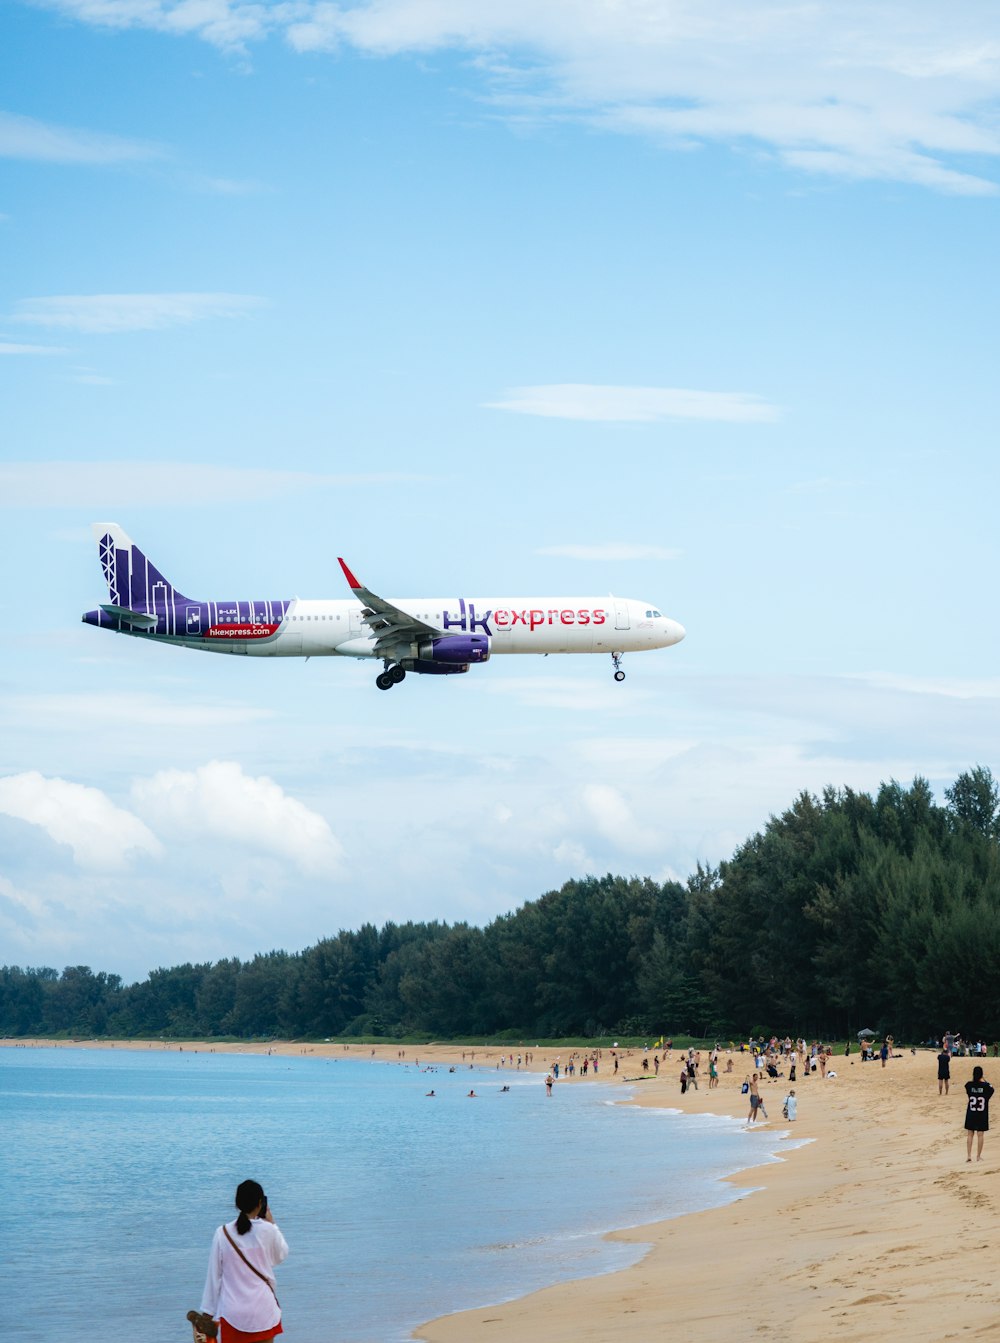 Un gran avión de pasajeros volando sobre una playa de arena